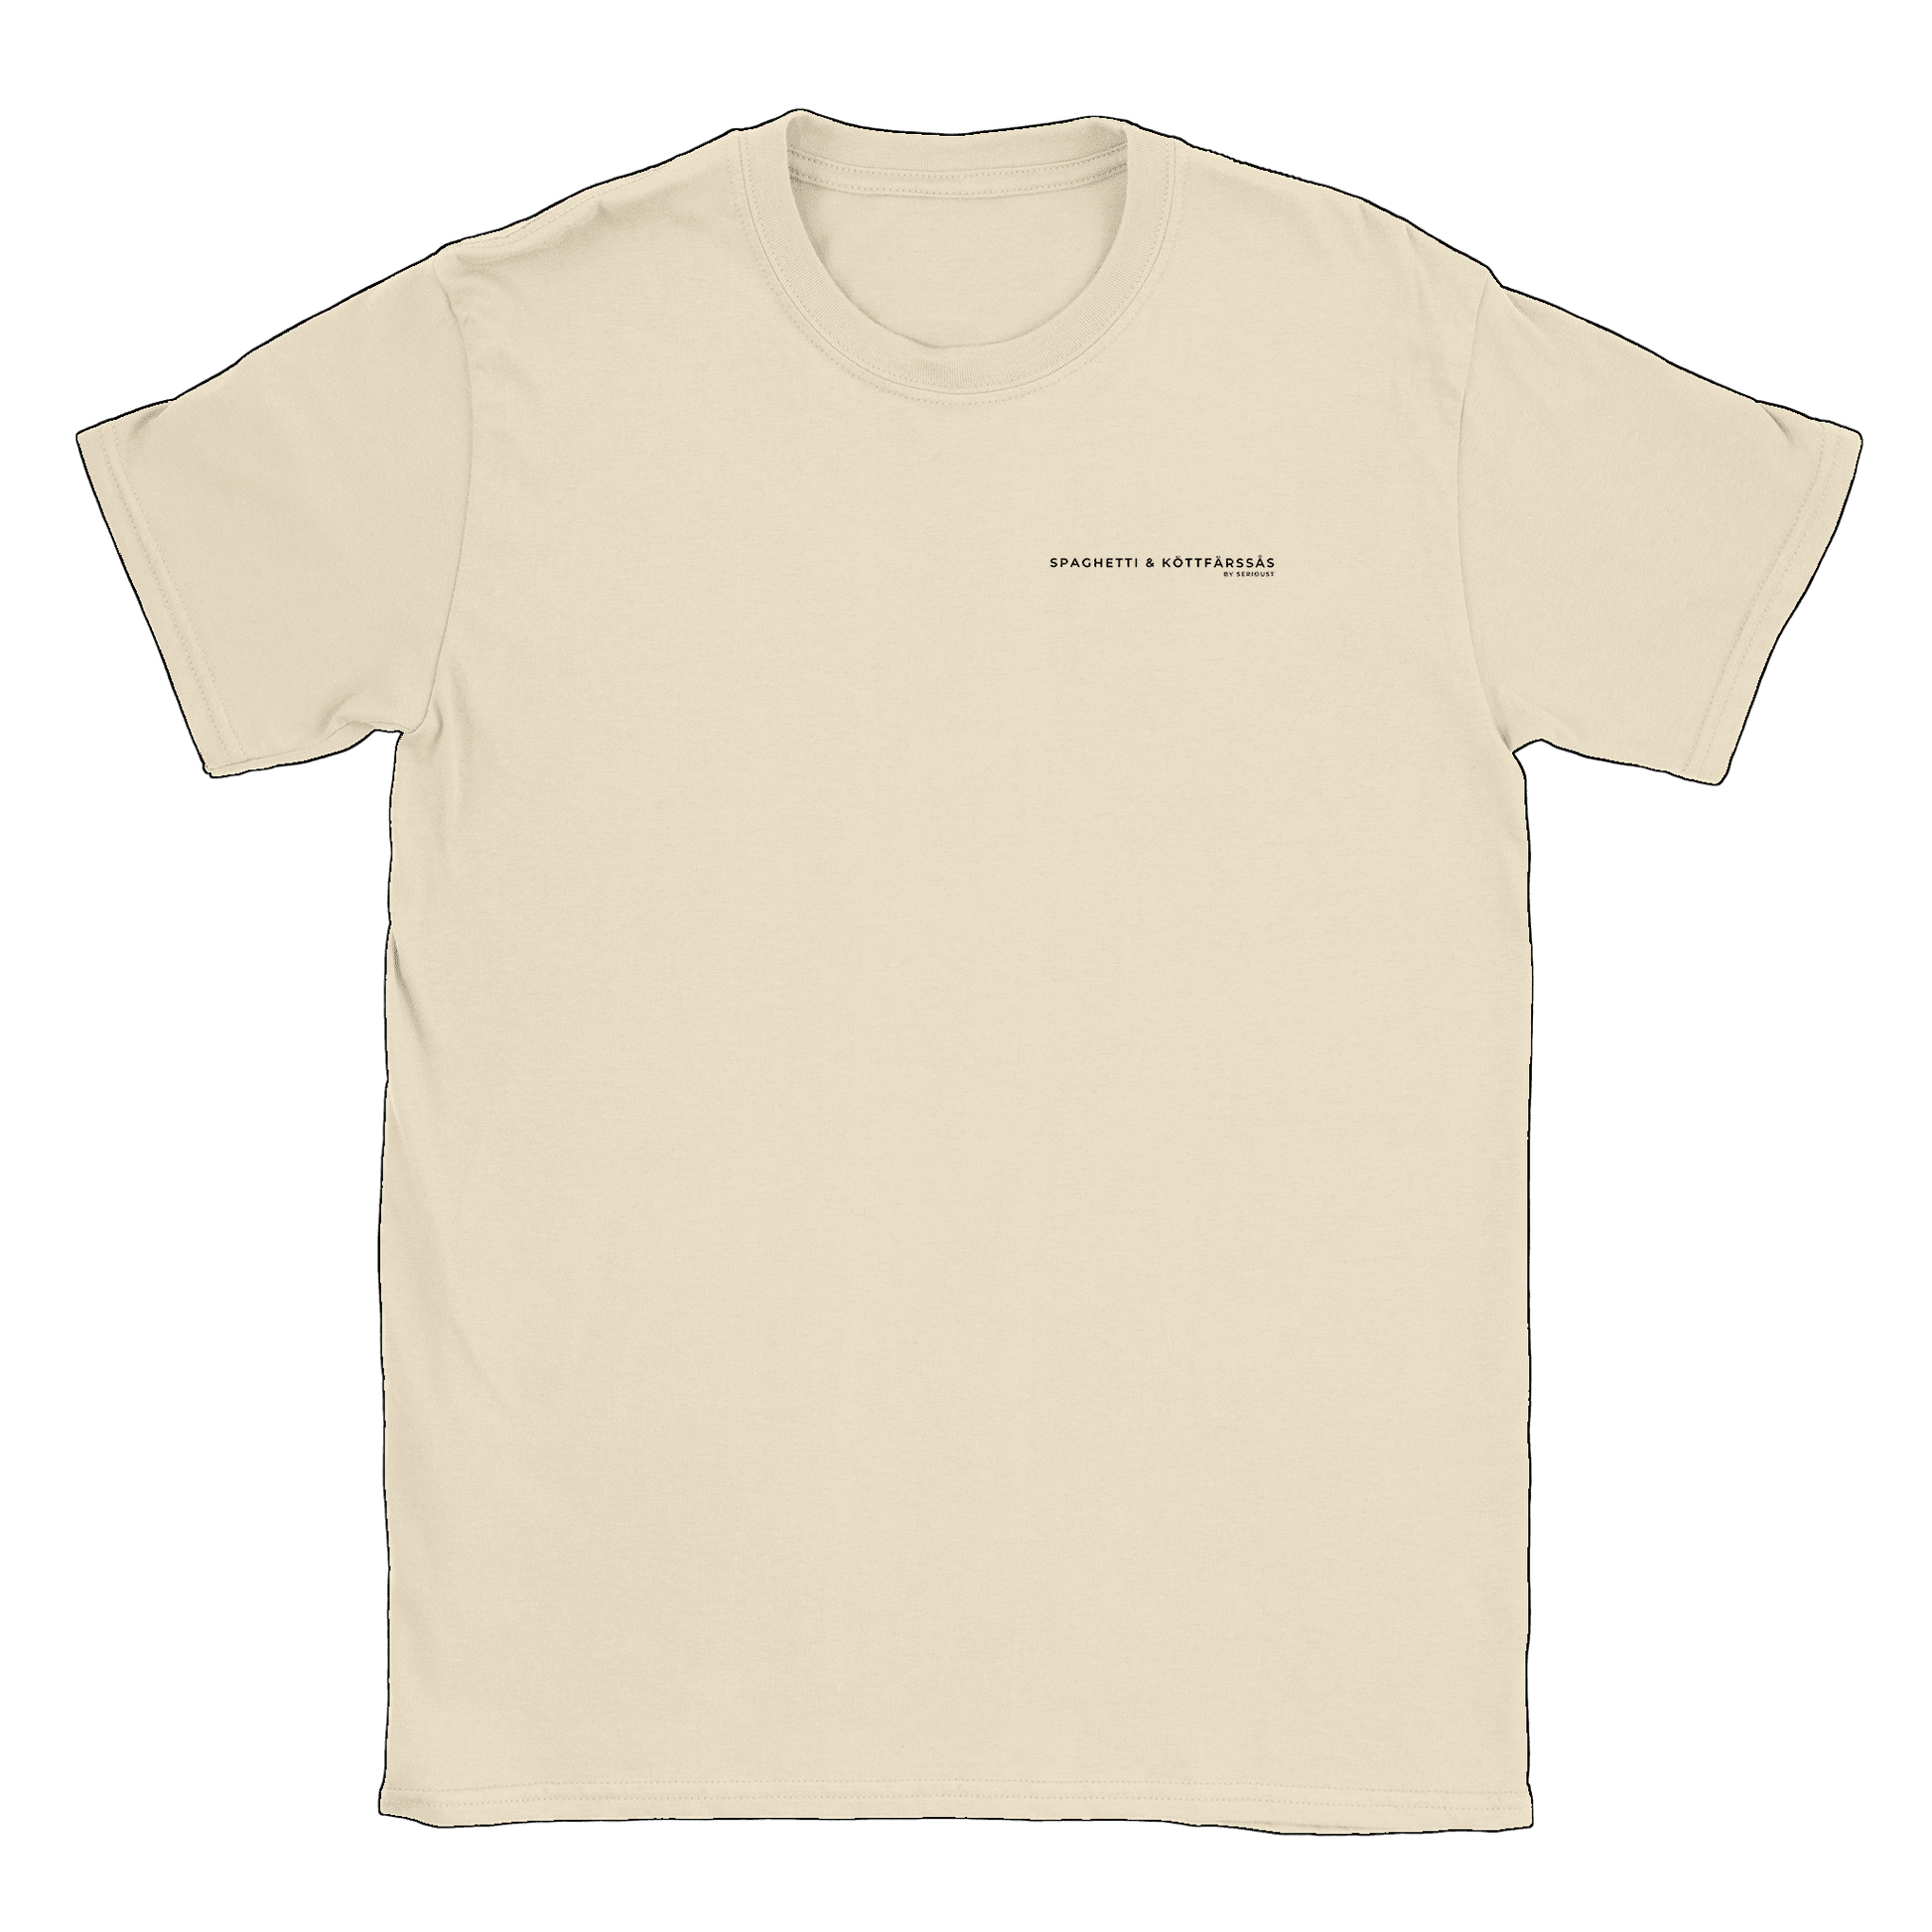 Spaghetti & Köttfärsås by Serious T - T-shirt Natural